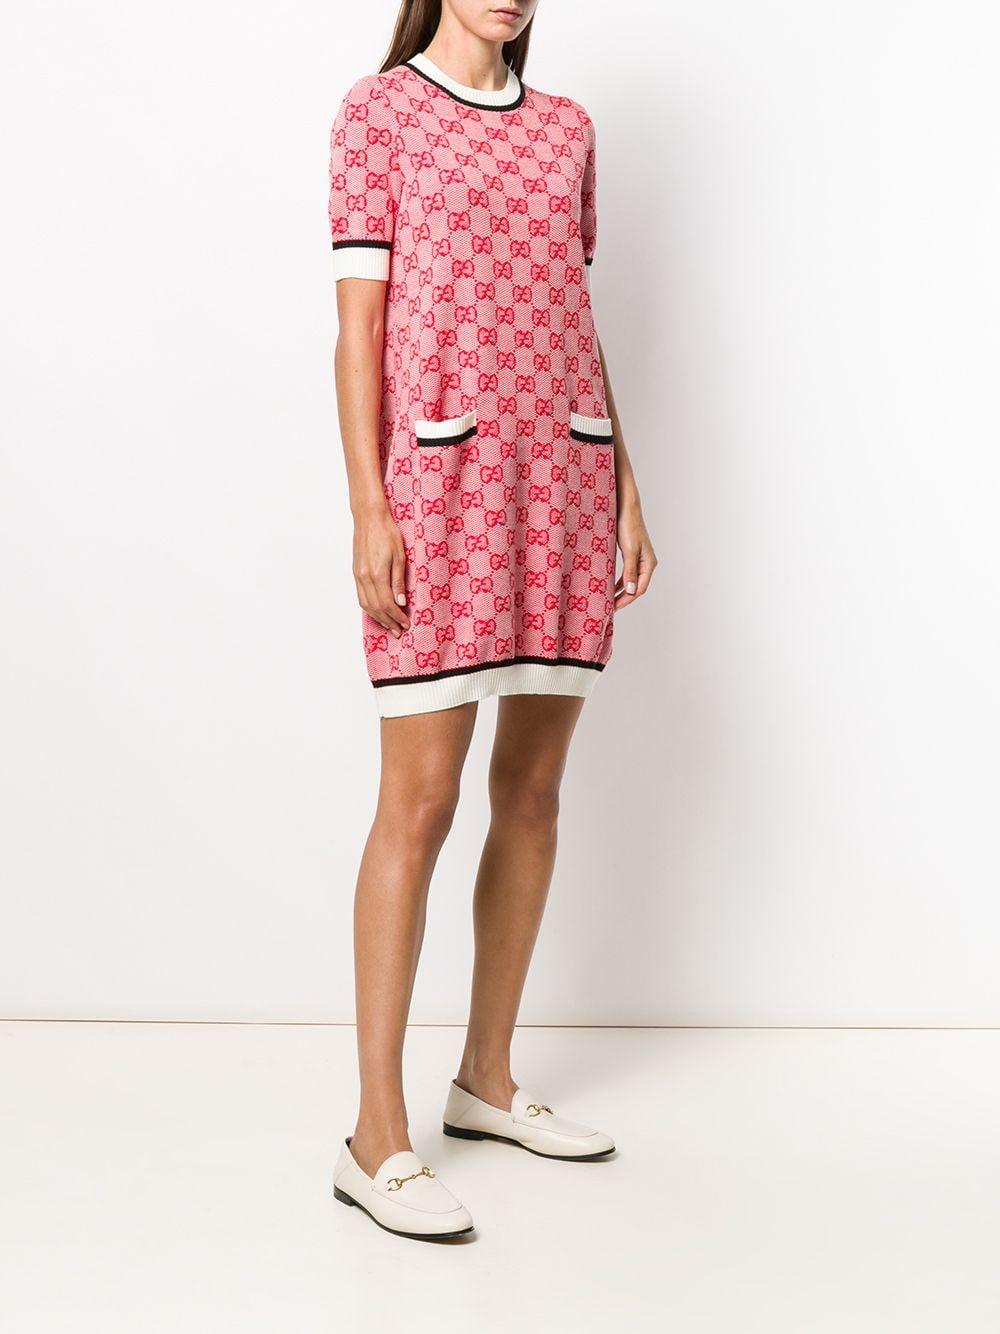 Gucci Wool GG Knit Mini Dress in Pink - Lyst